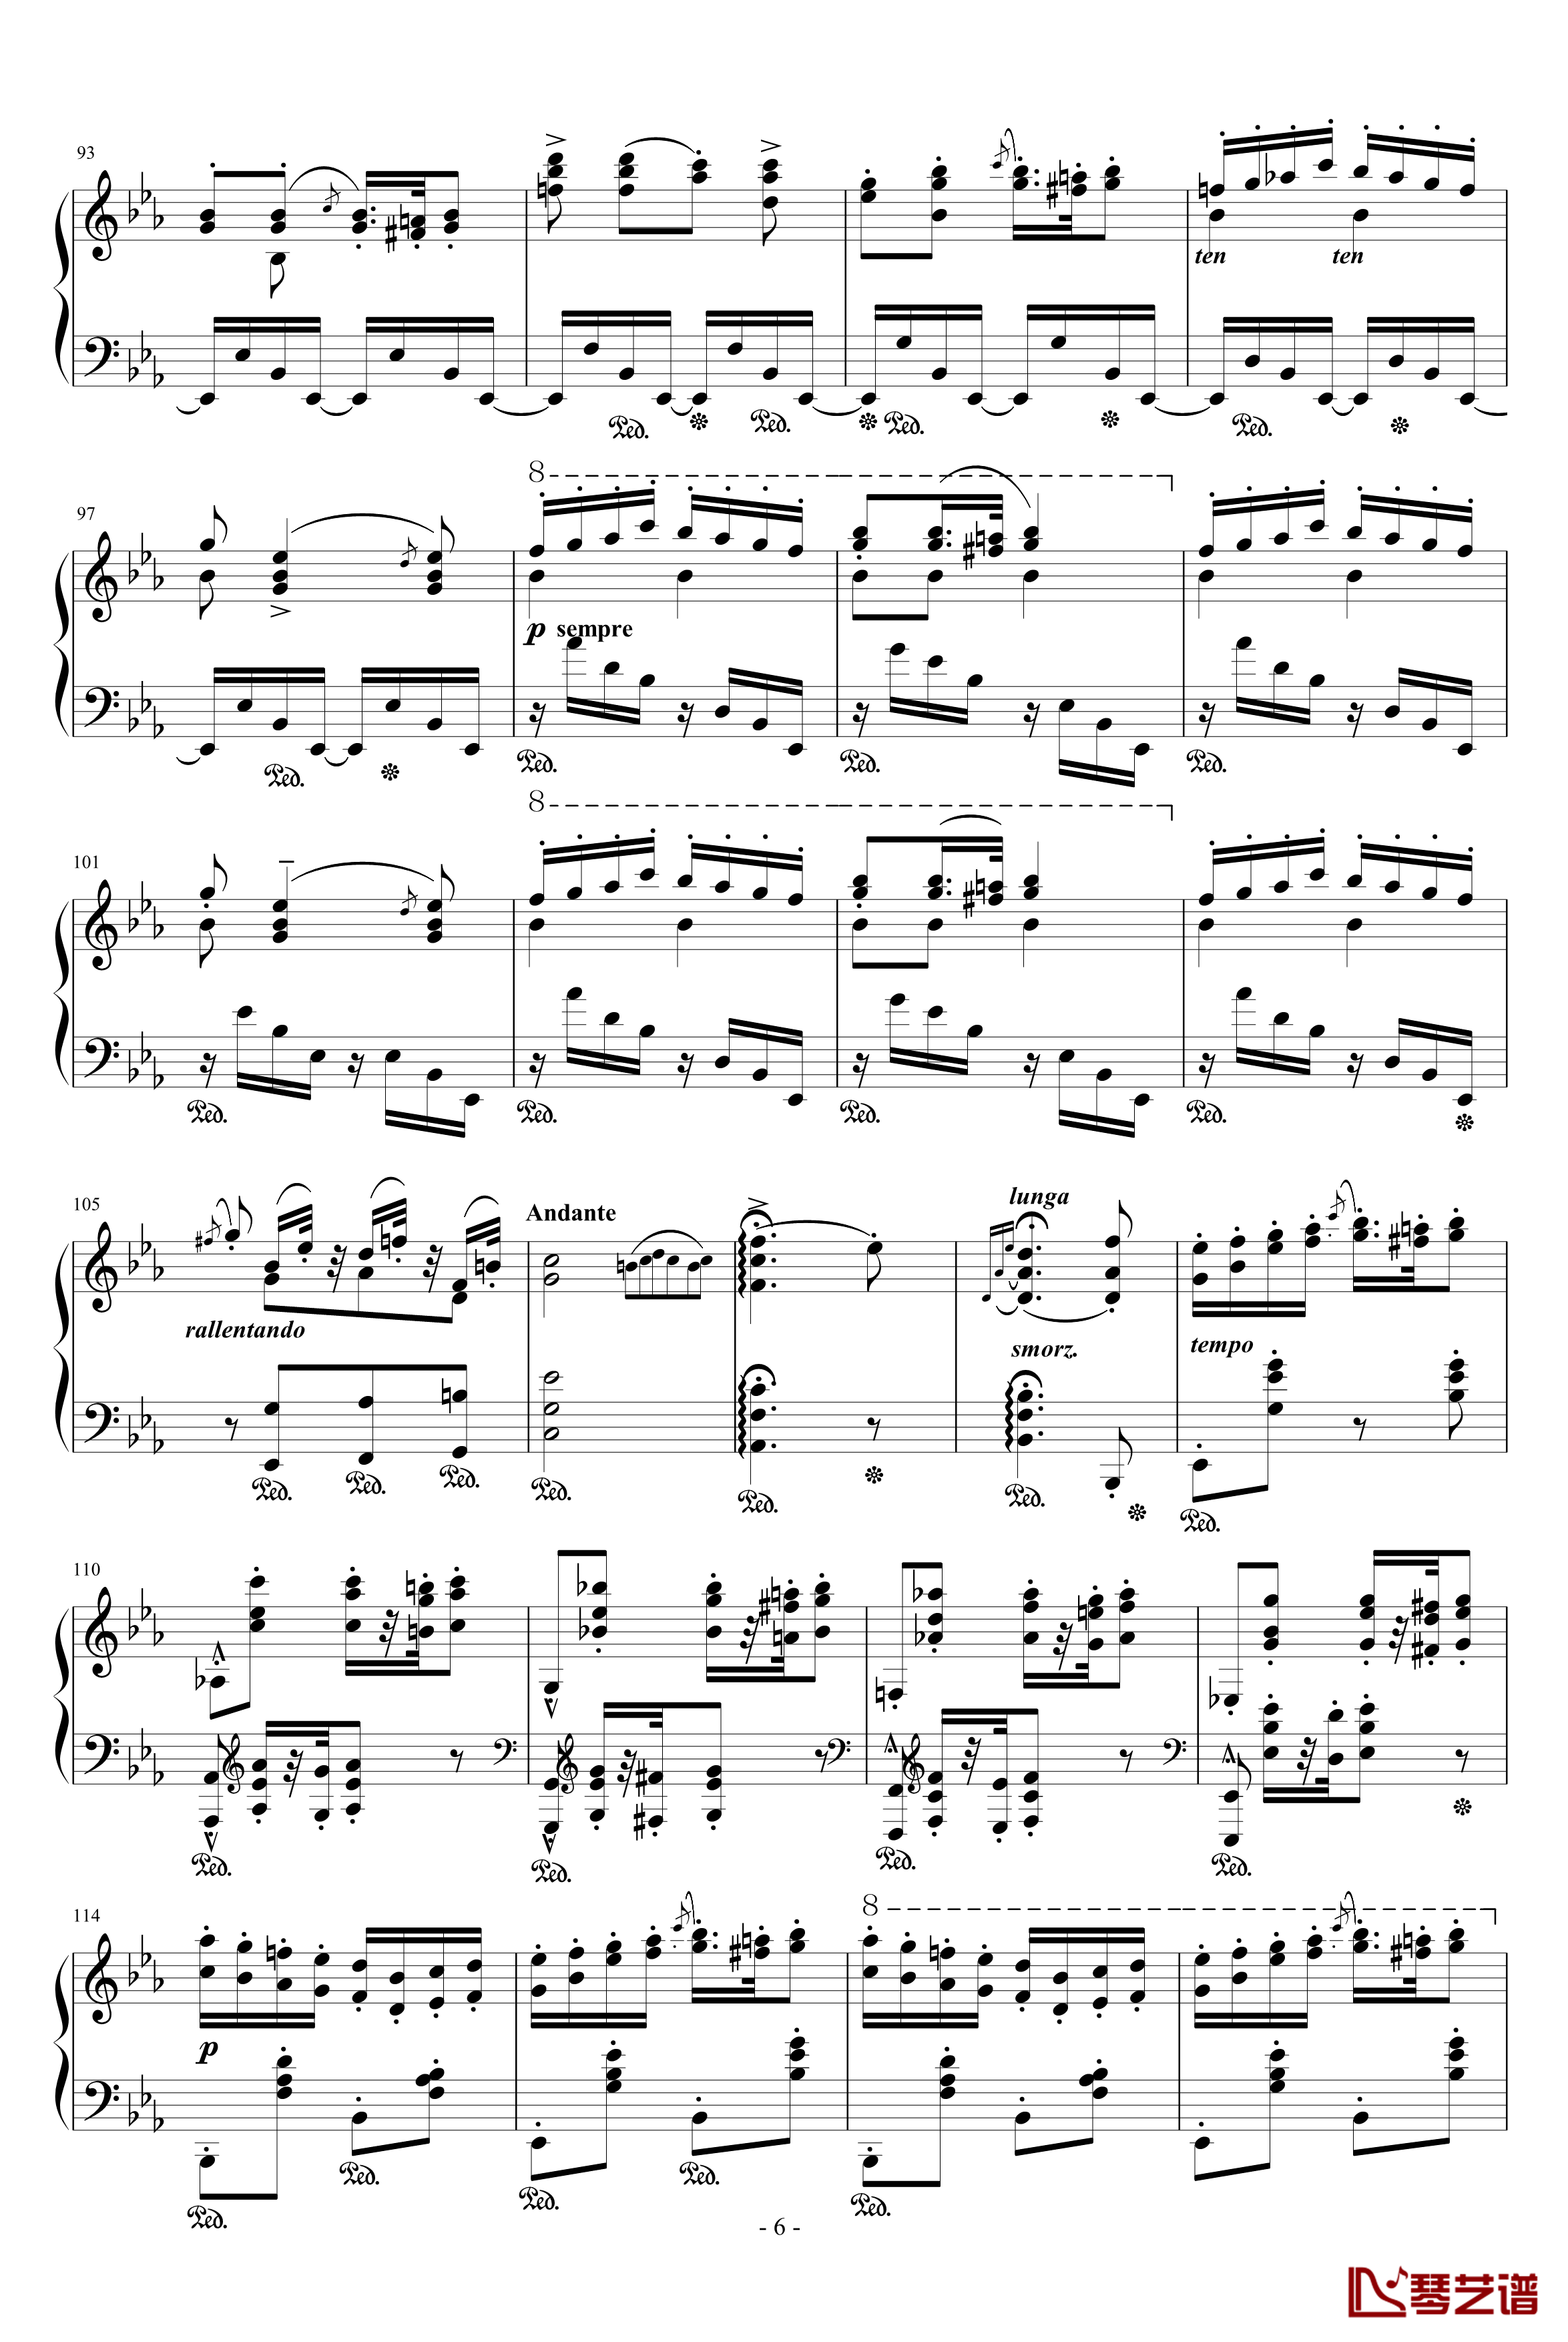 匈牙利狂想曲第9号钢琴谱-19首匈狂里篇幅最浩大、技巧最艰深的作品之一-李斯特6